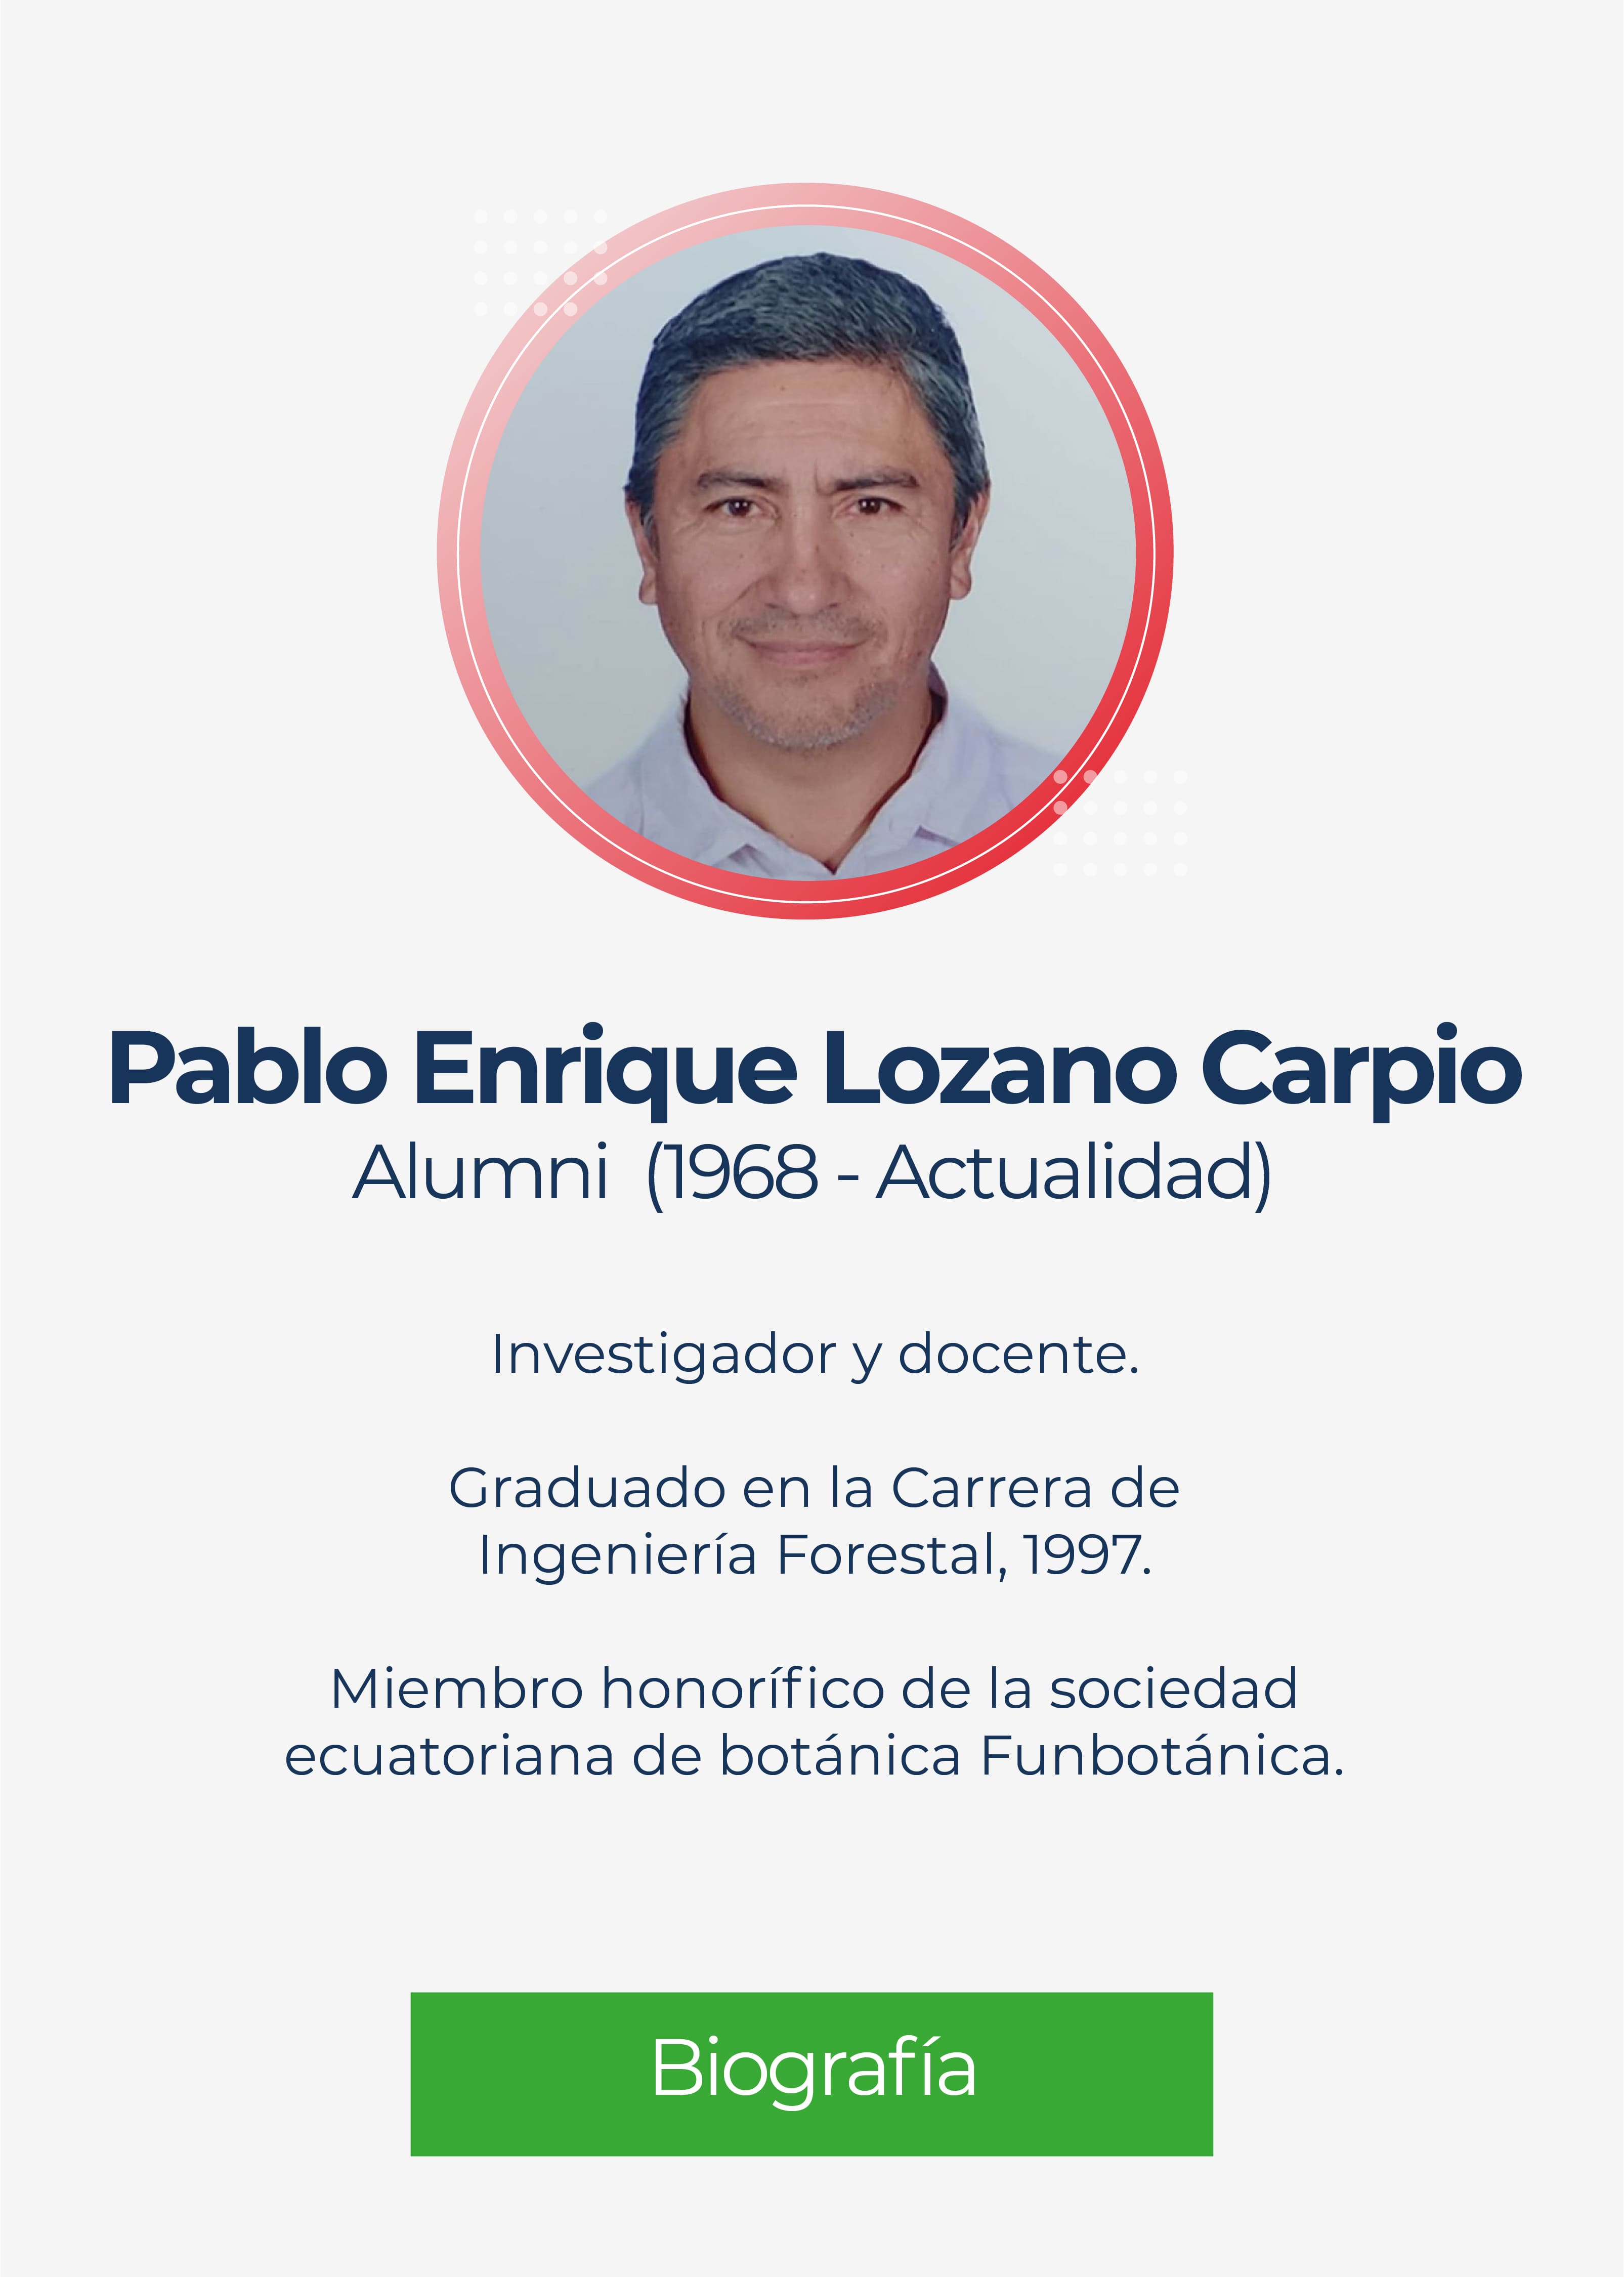 Pablo Enrique Lozano Carpio